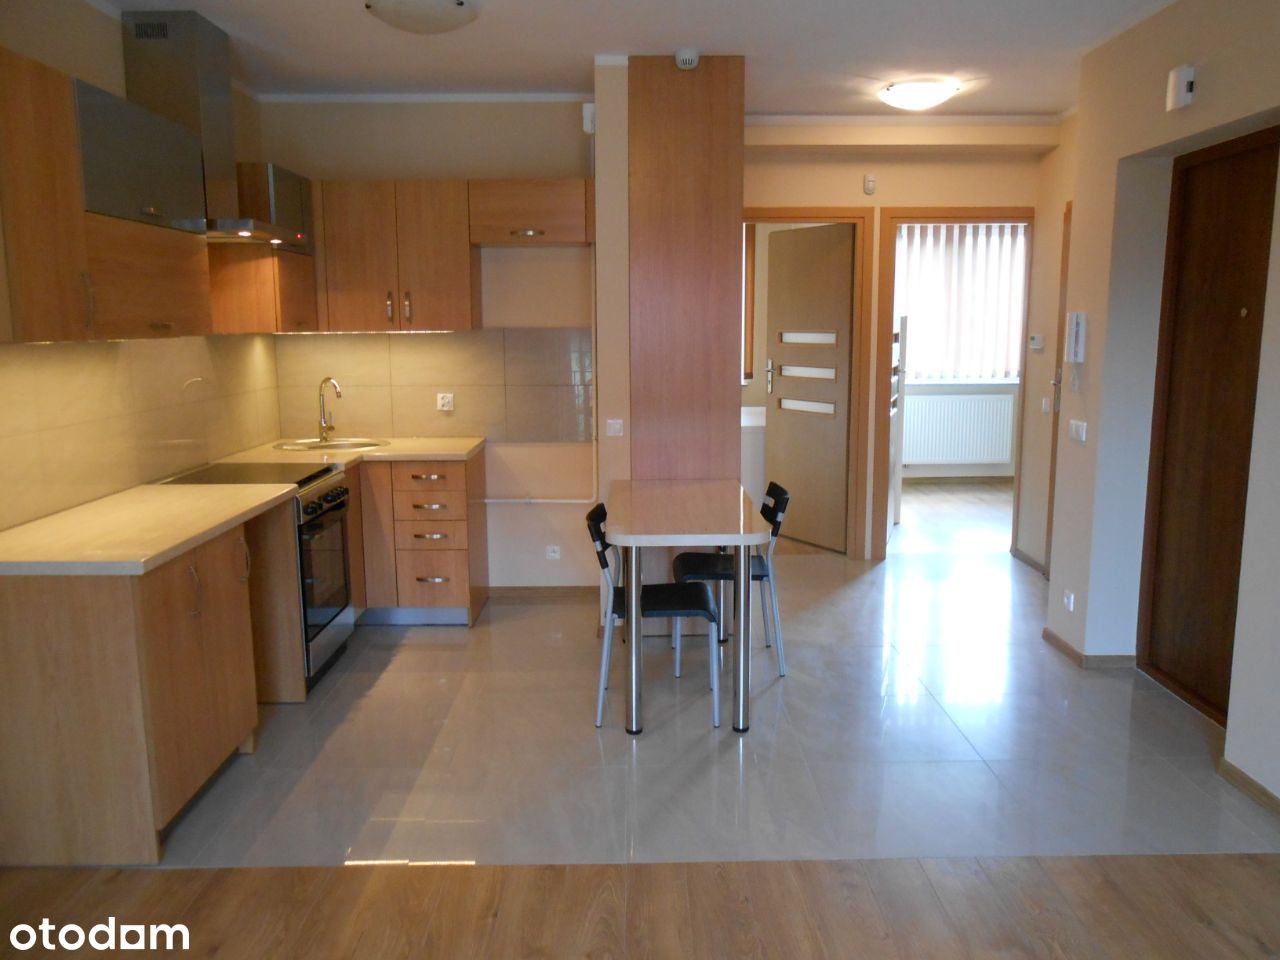 Mieszkanie - Lokal 46 m2, 3 pokoje, bezpośrednio